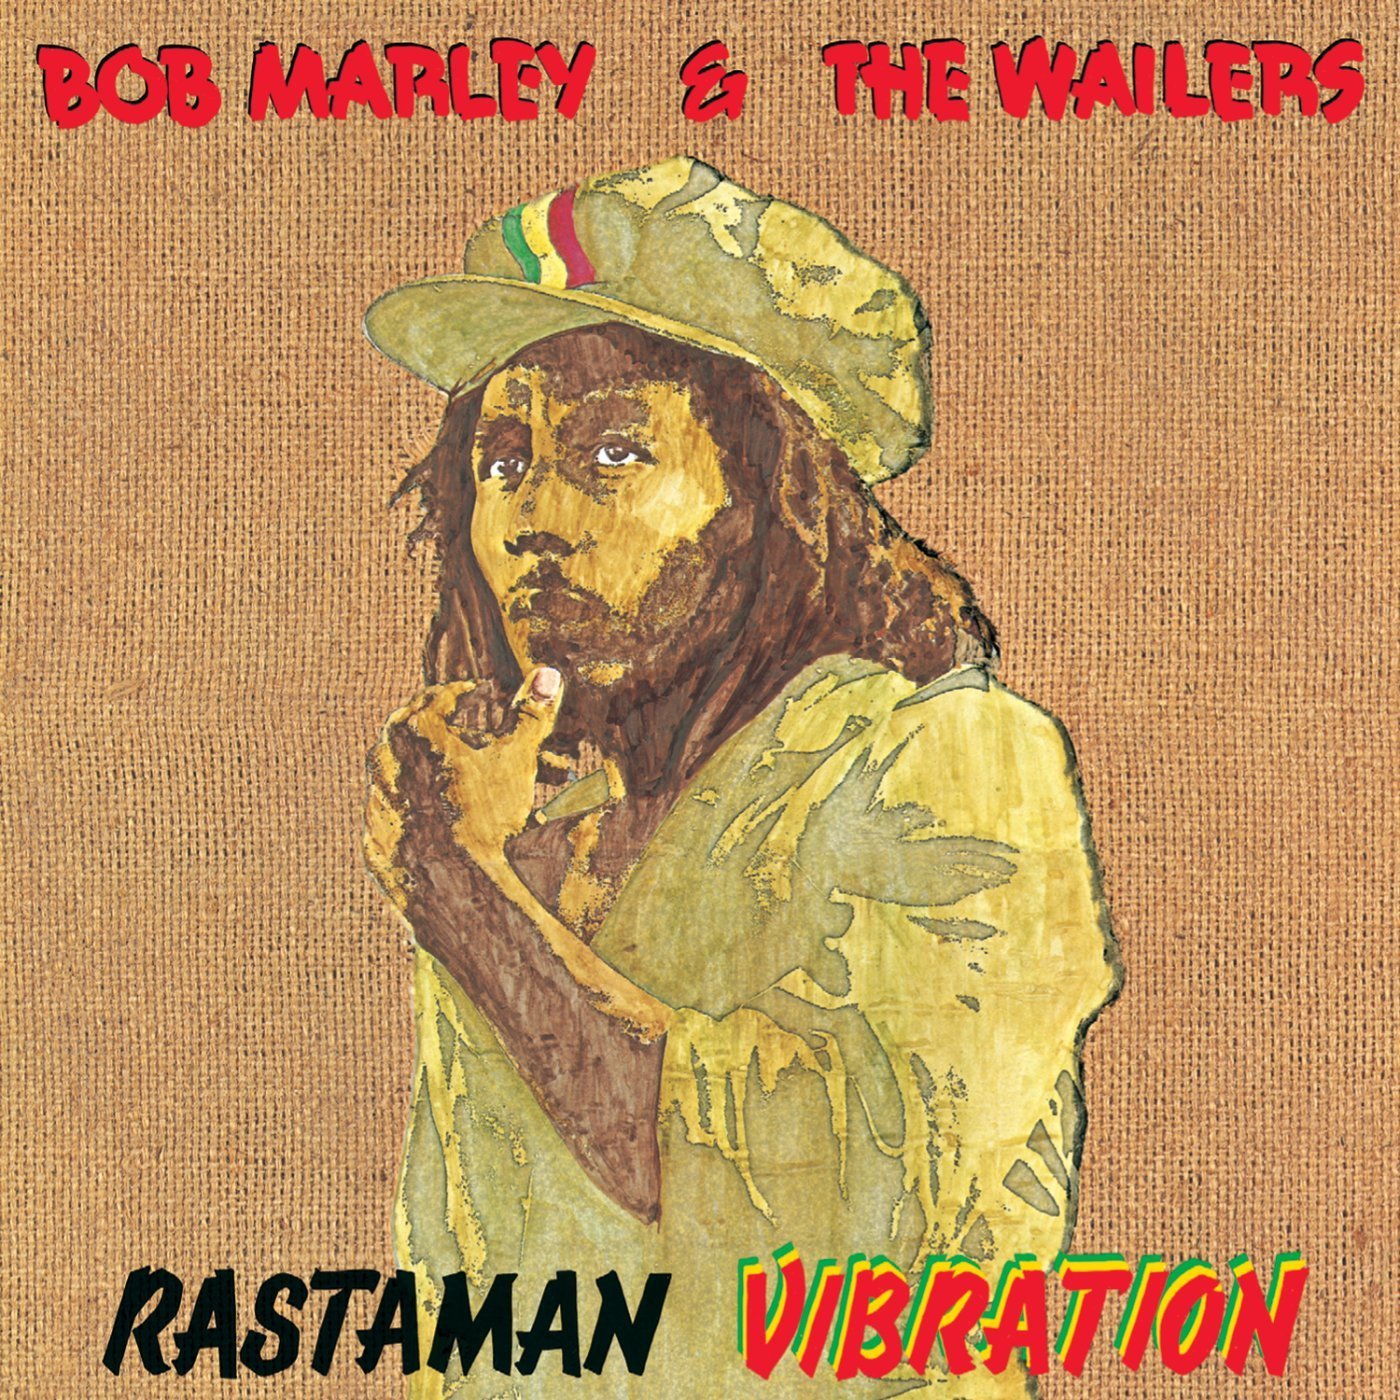 Vinile Bob Marley & The Wailers - Rastaman Vibration NUOVO SIGILLATO, EDIZIONE DEL 25/09/2015 SUBITO DISPONIBILE